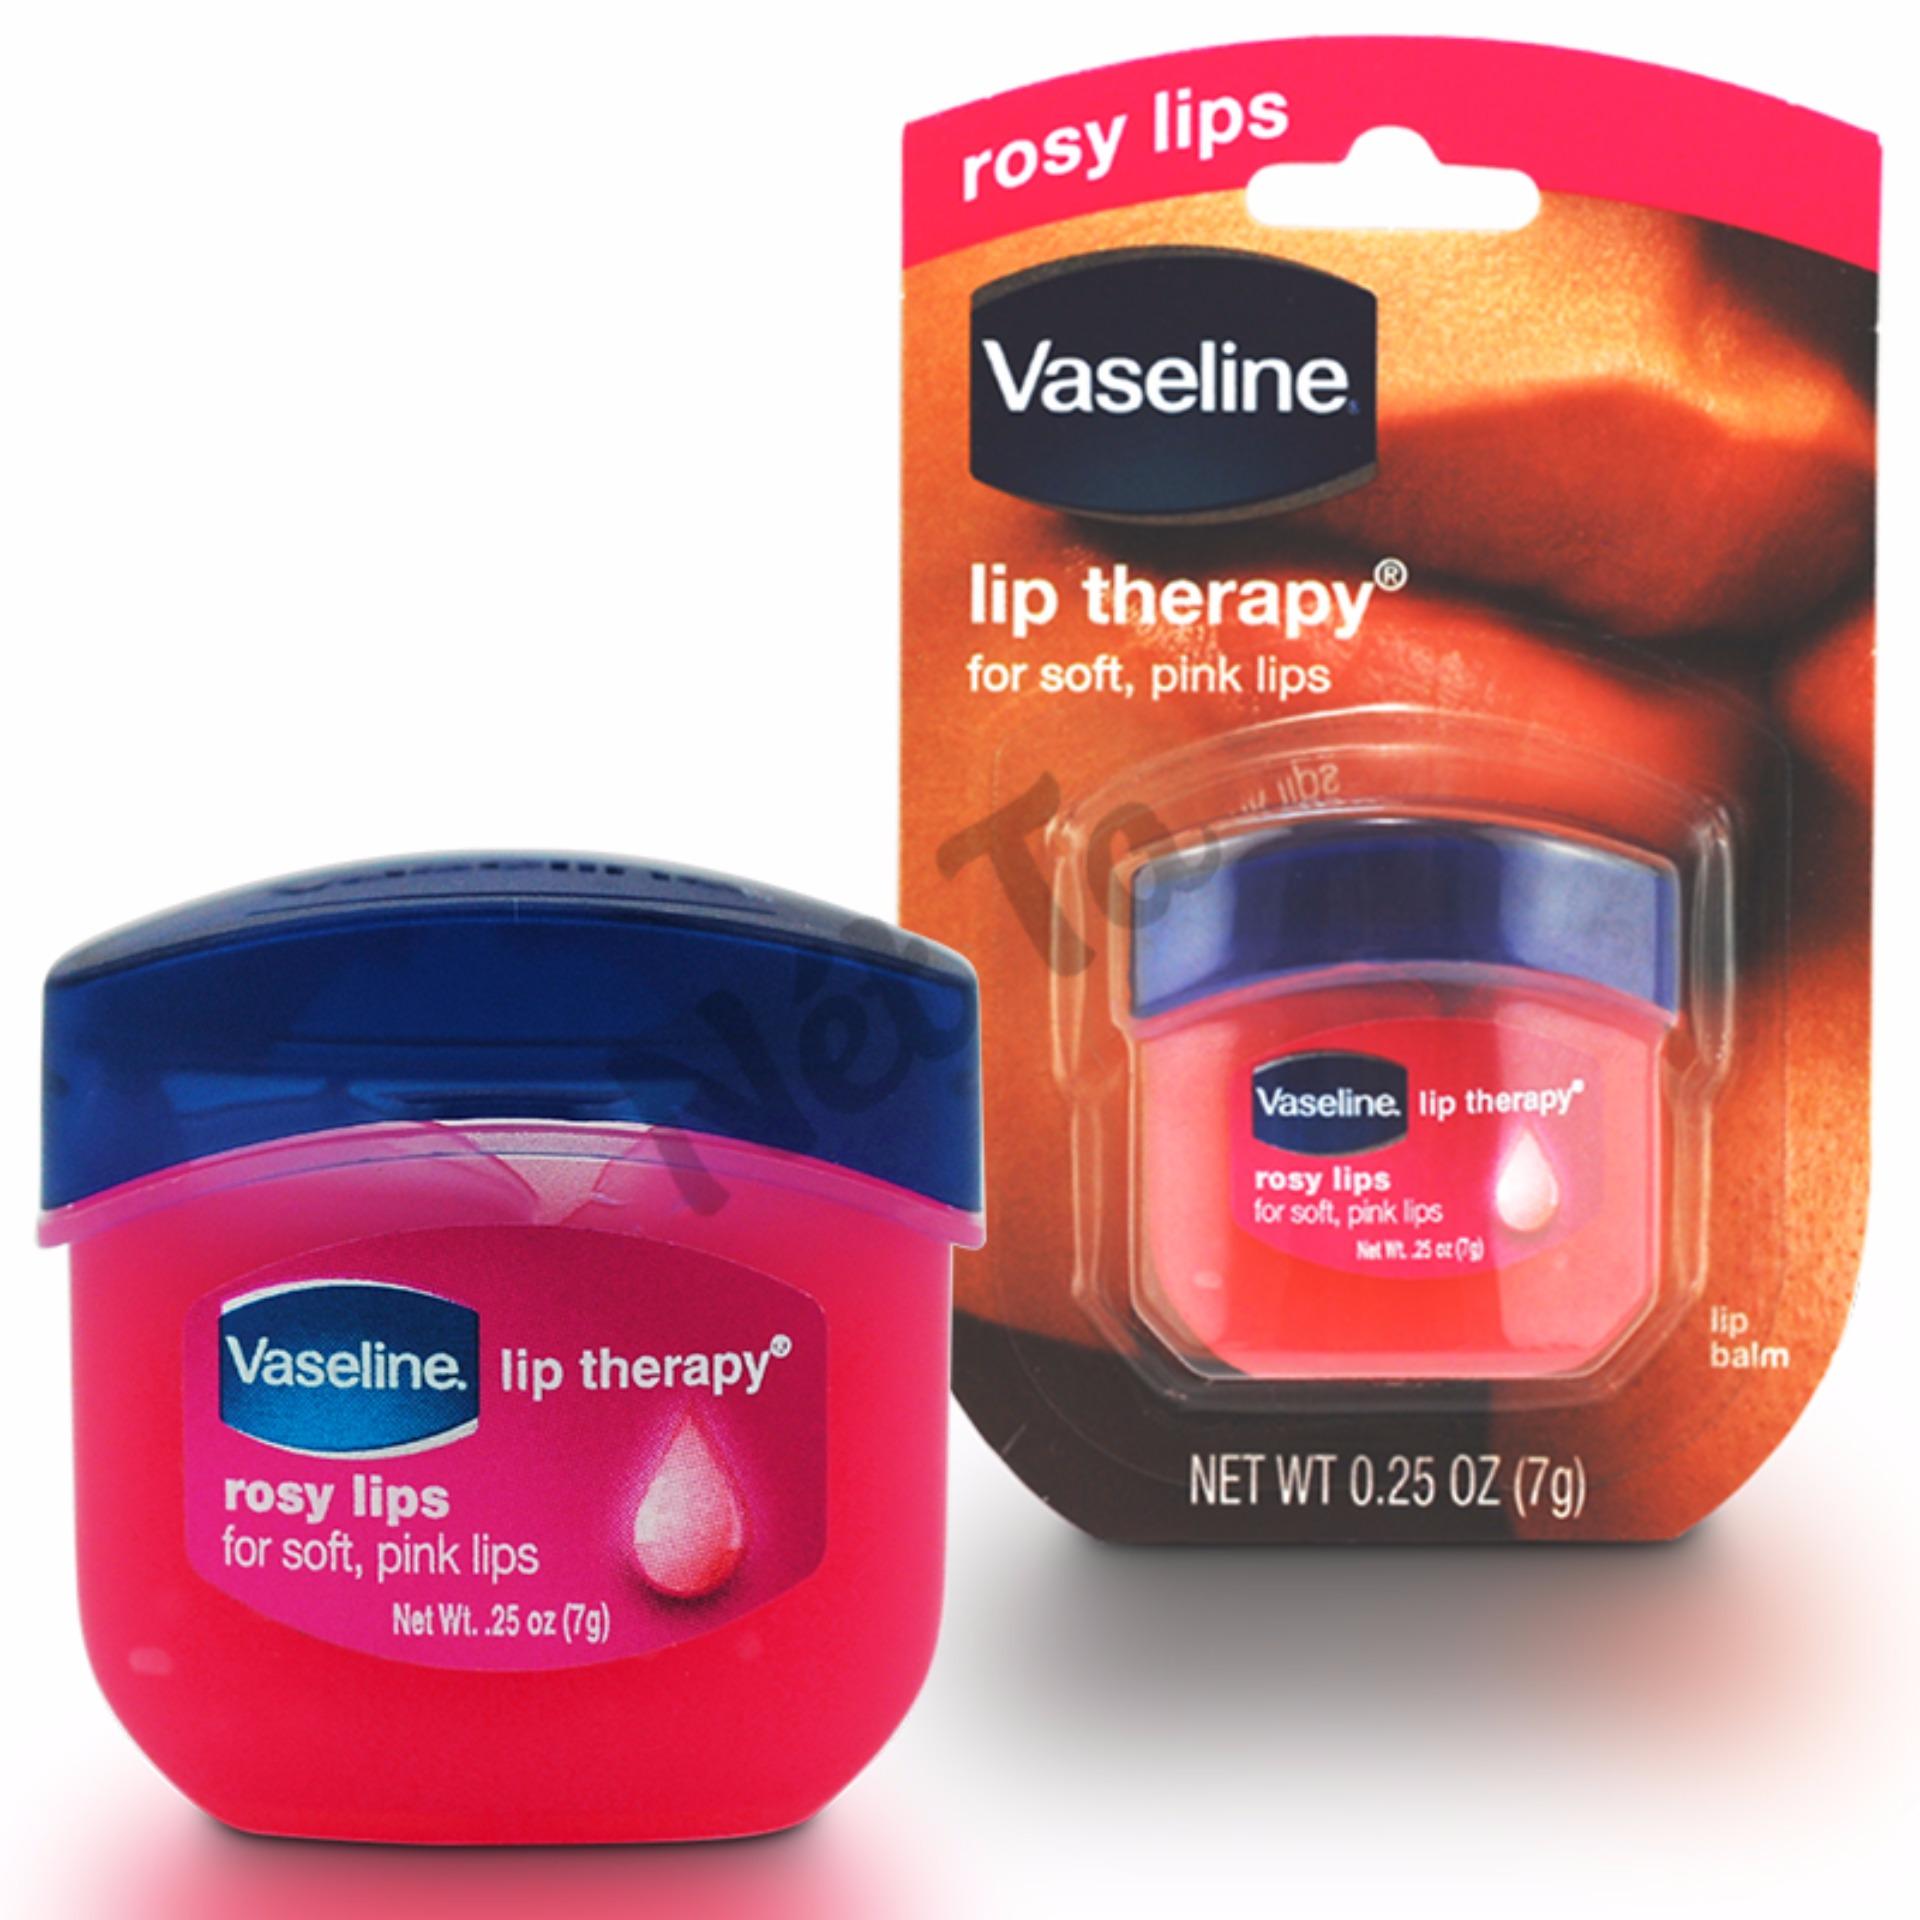 Vaseline Lip Therary Rosy Lips 7g Dưỡng môi hồng và mềm mại